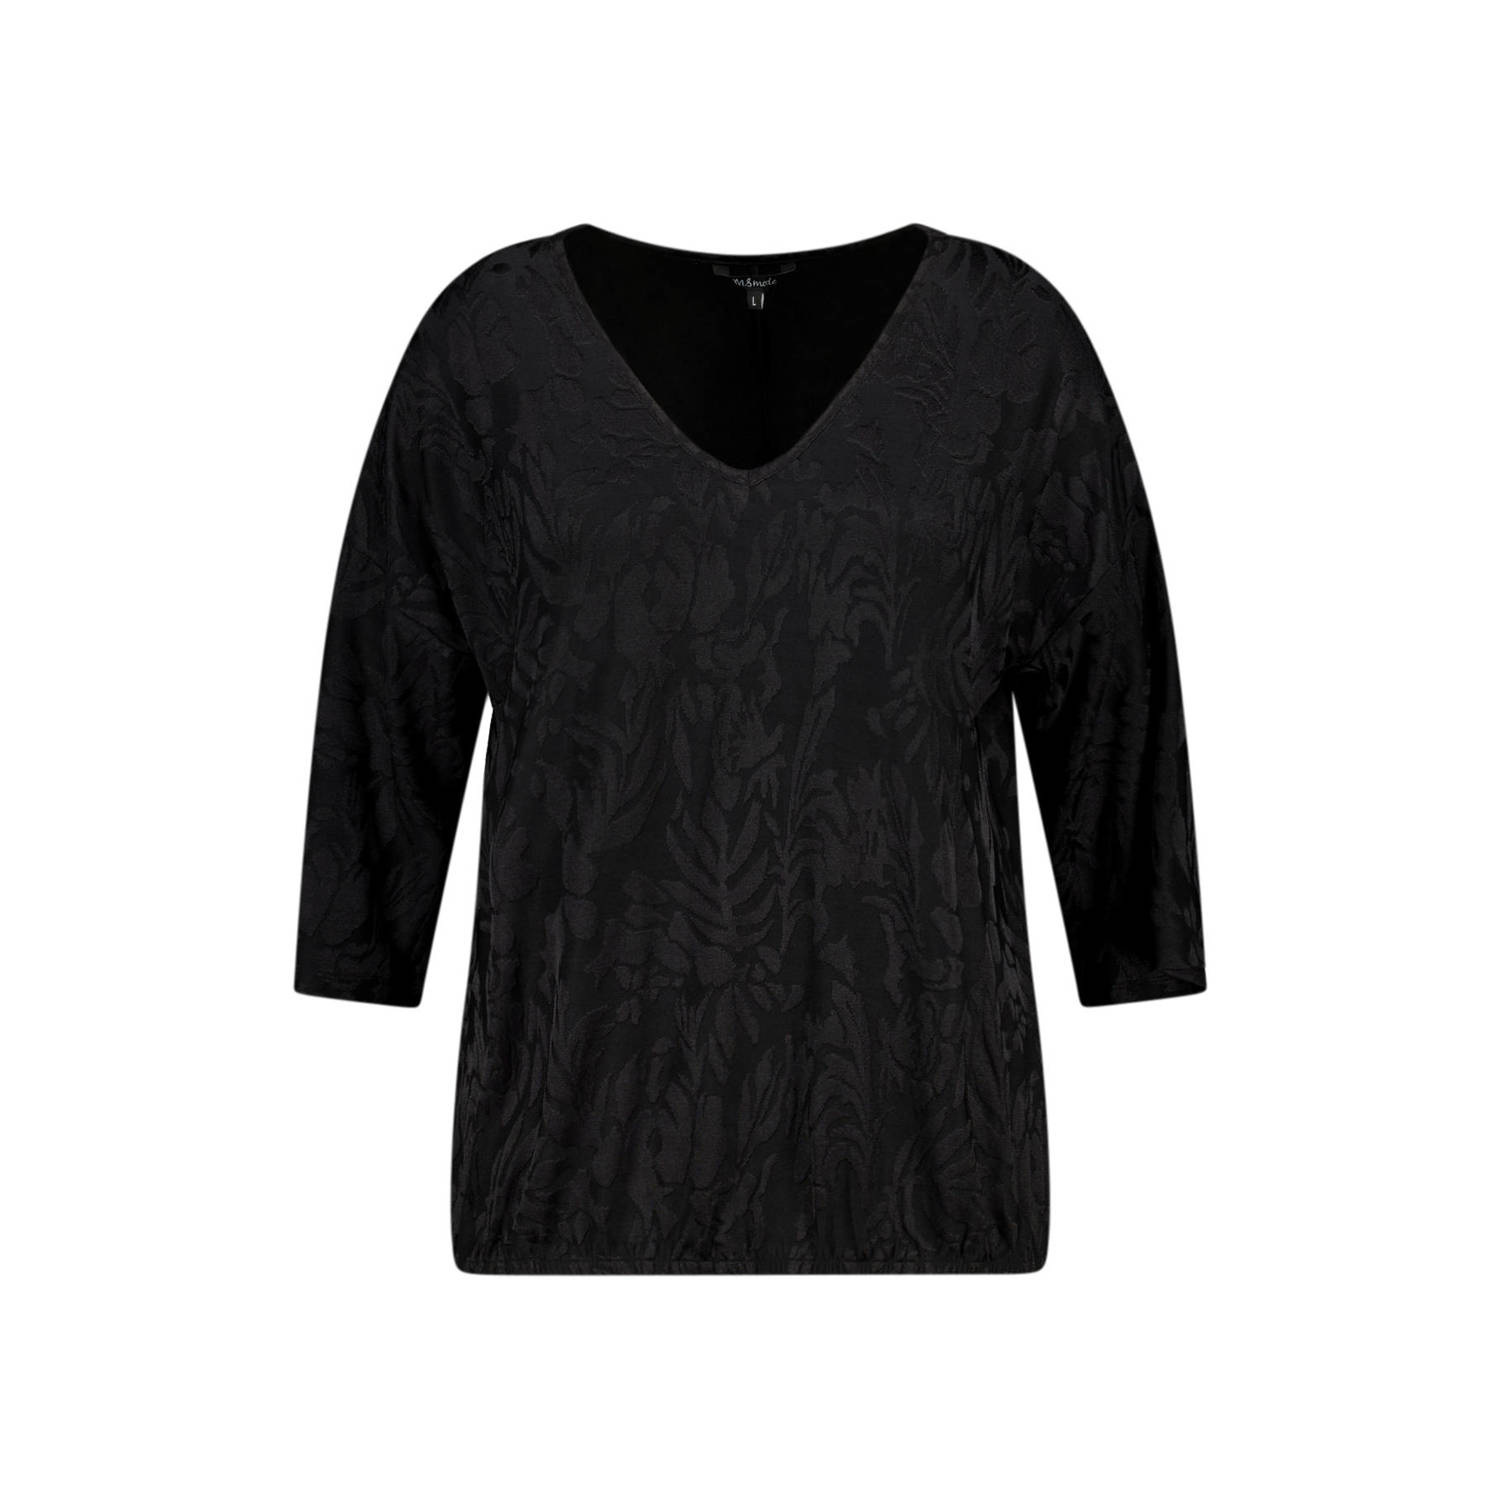 MS Mode T-shirt met zebraprint zwart